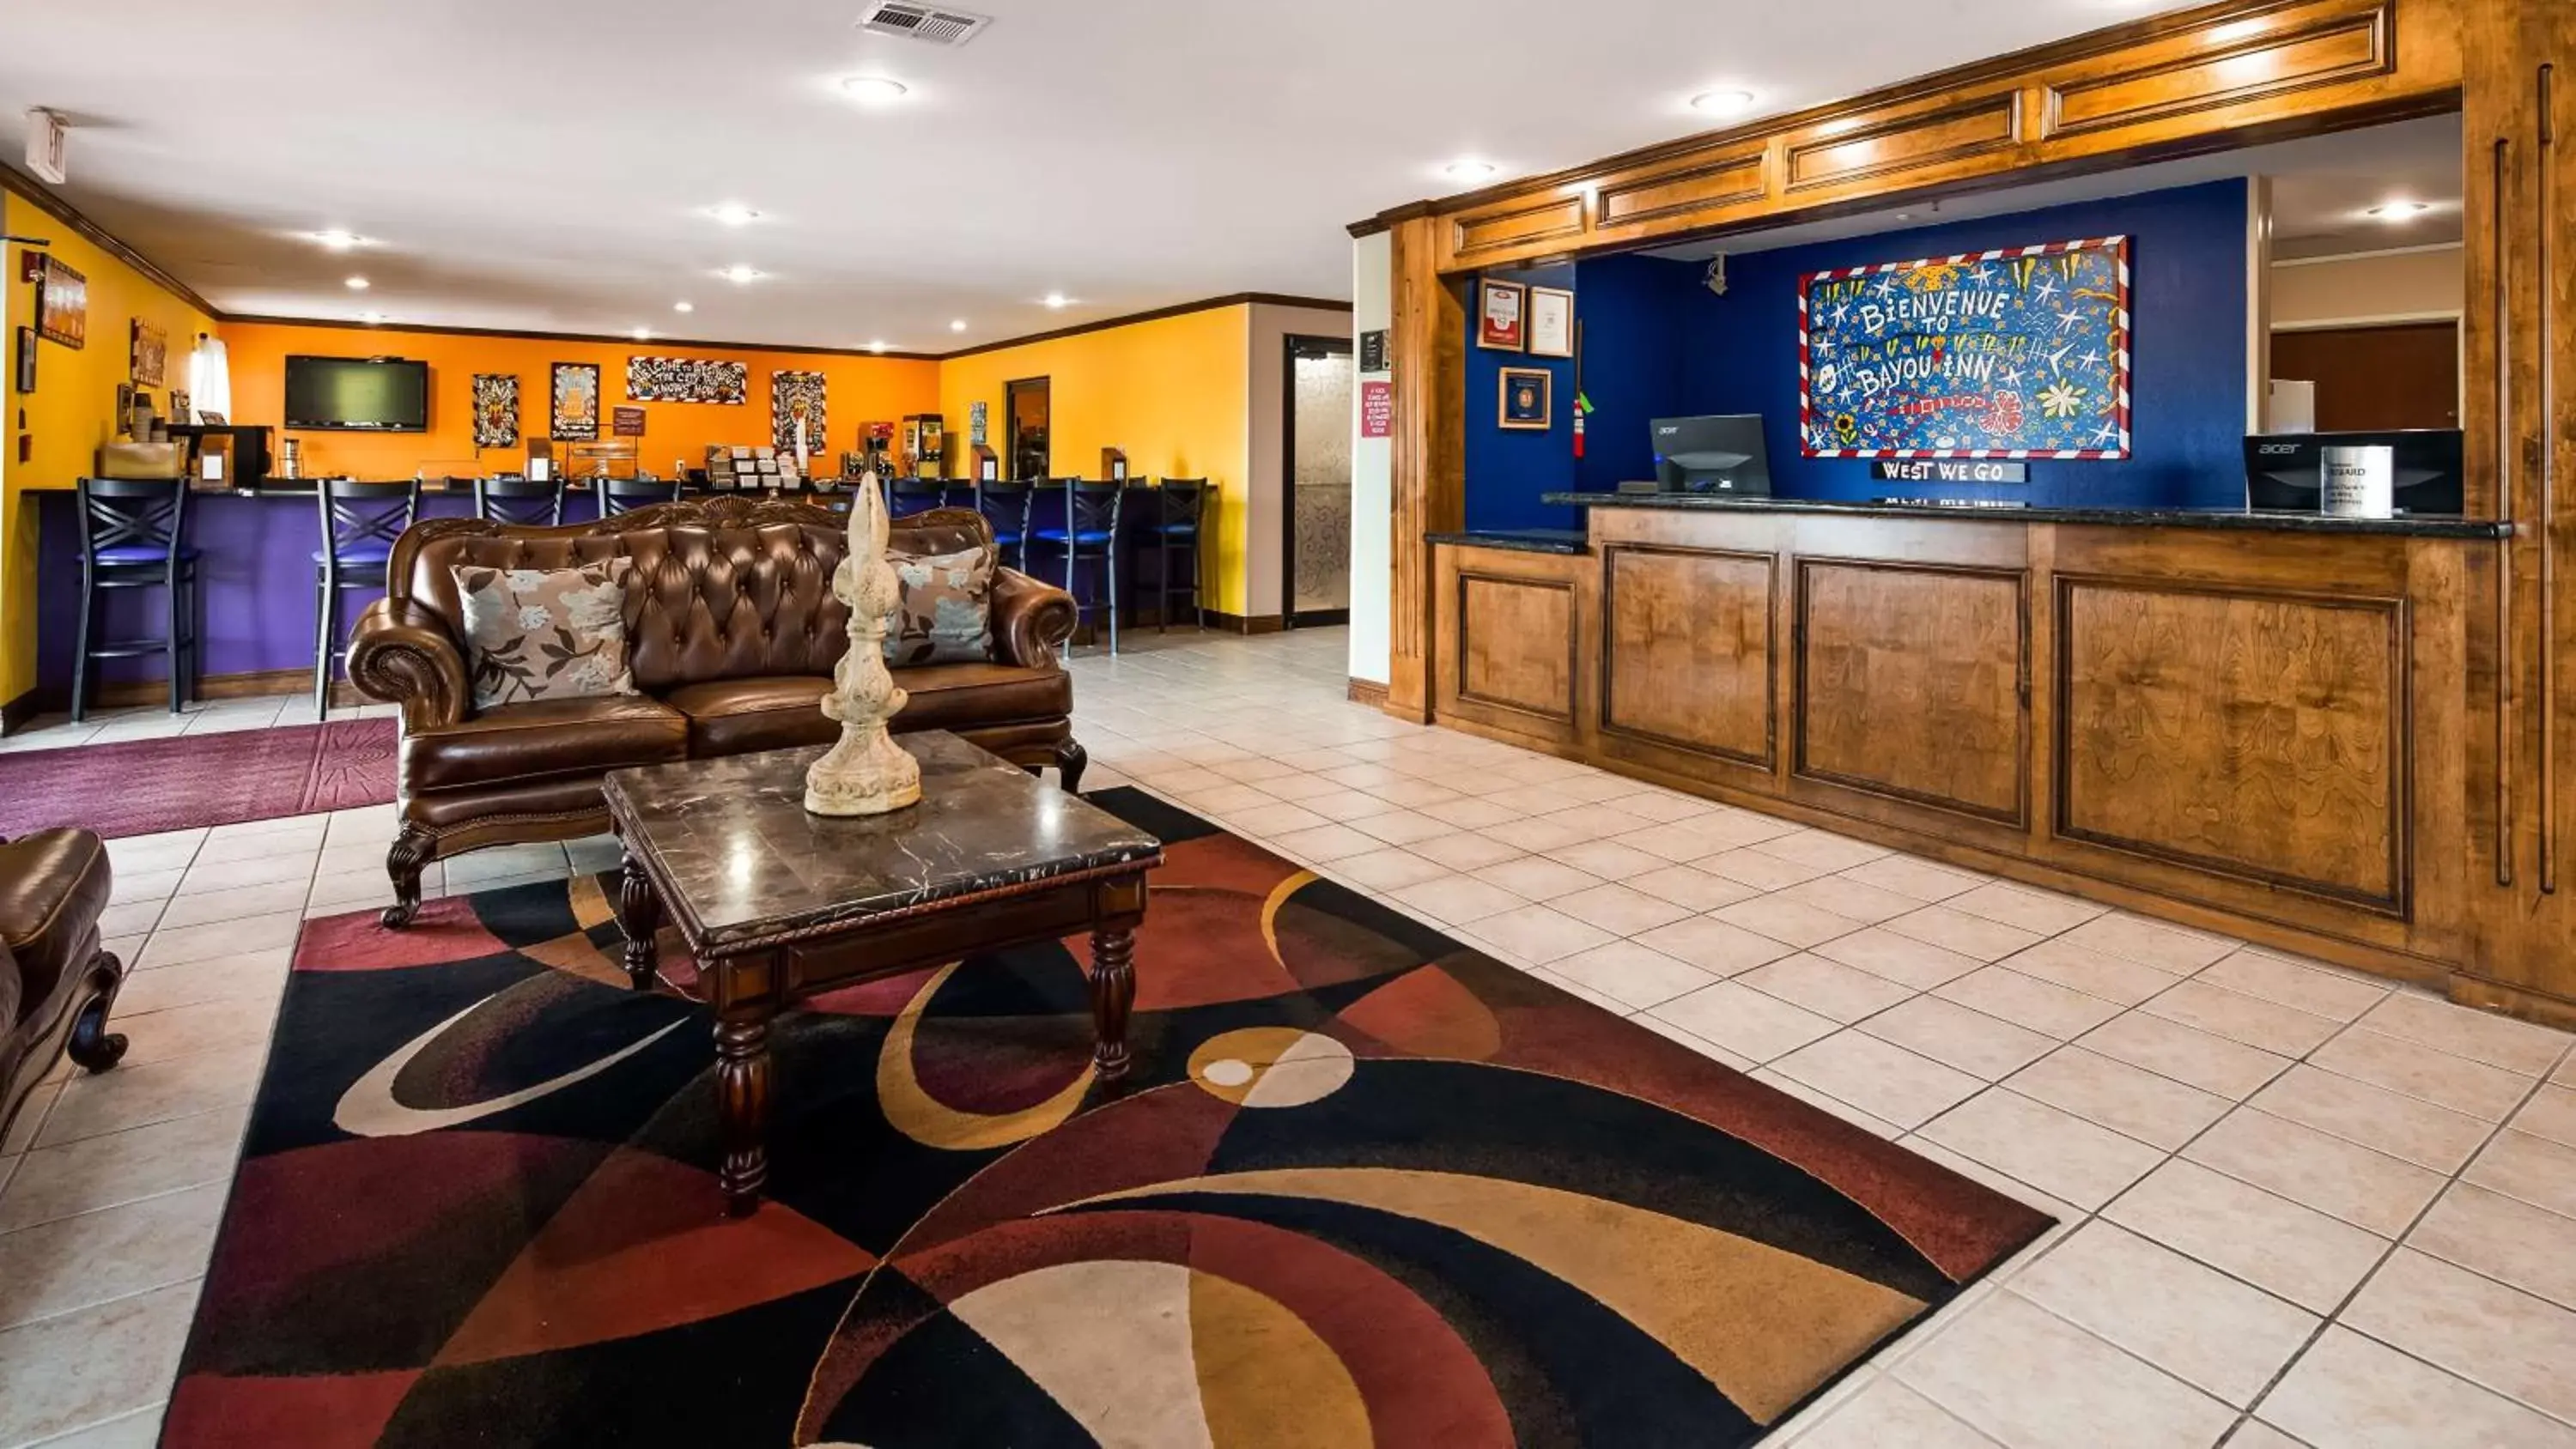 Lobby or reception, Lobby/Reception in Best Western Bayou Inn